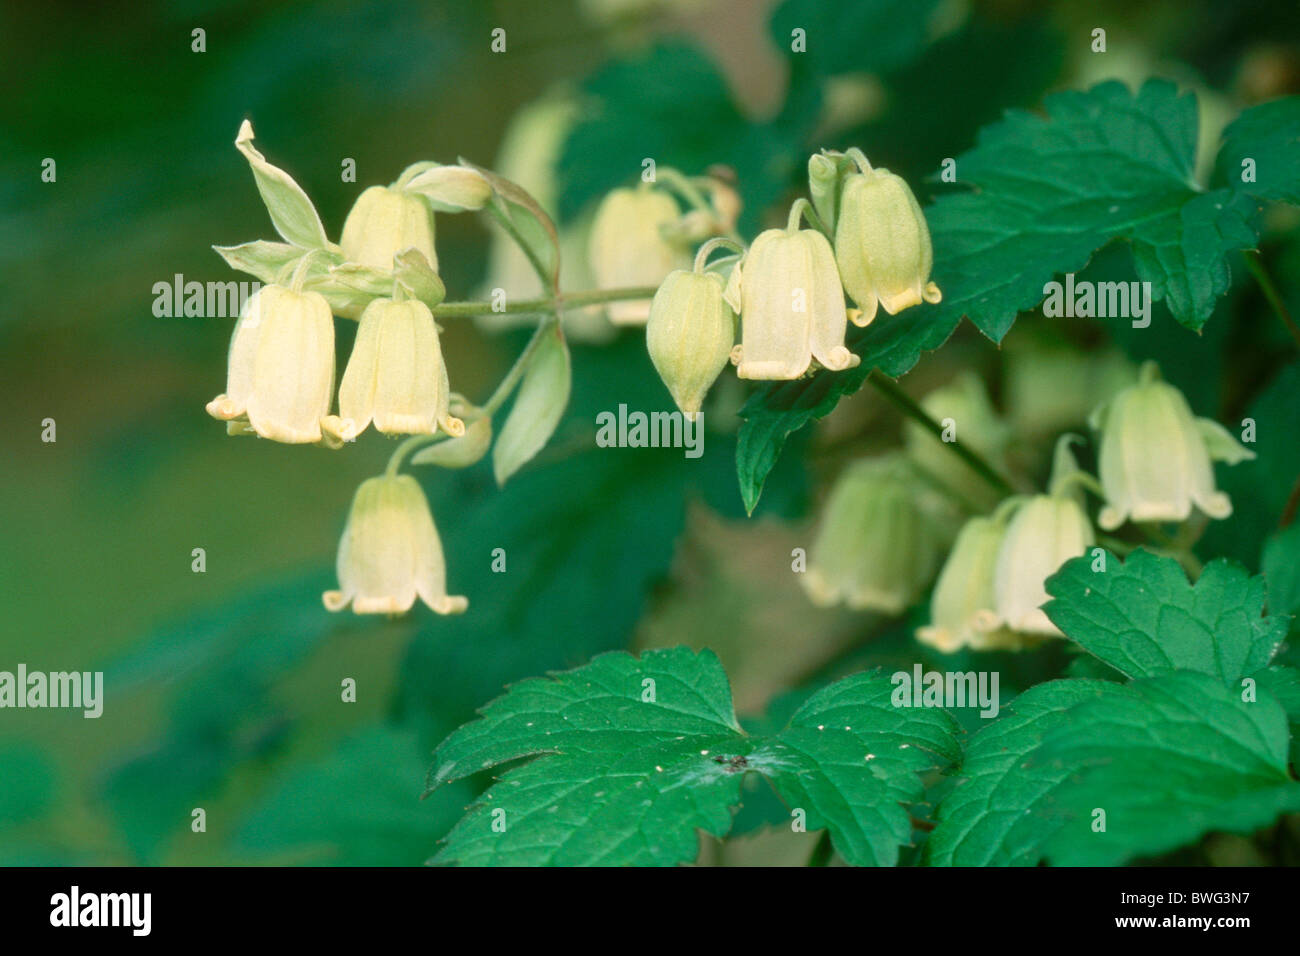 Clematis (Clematis rehderiana), flowering. Stock Photo